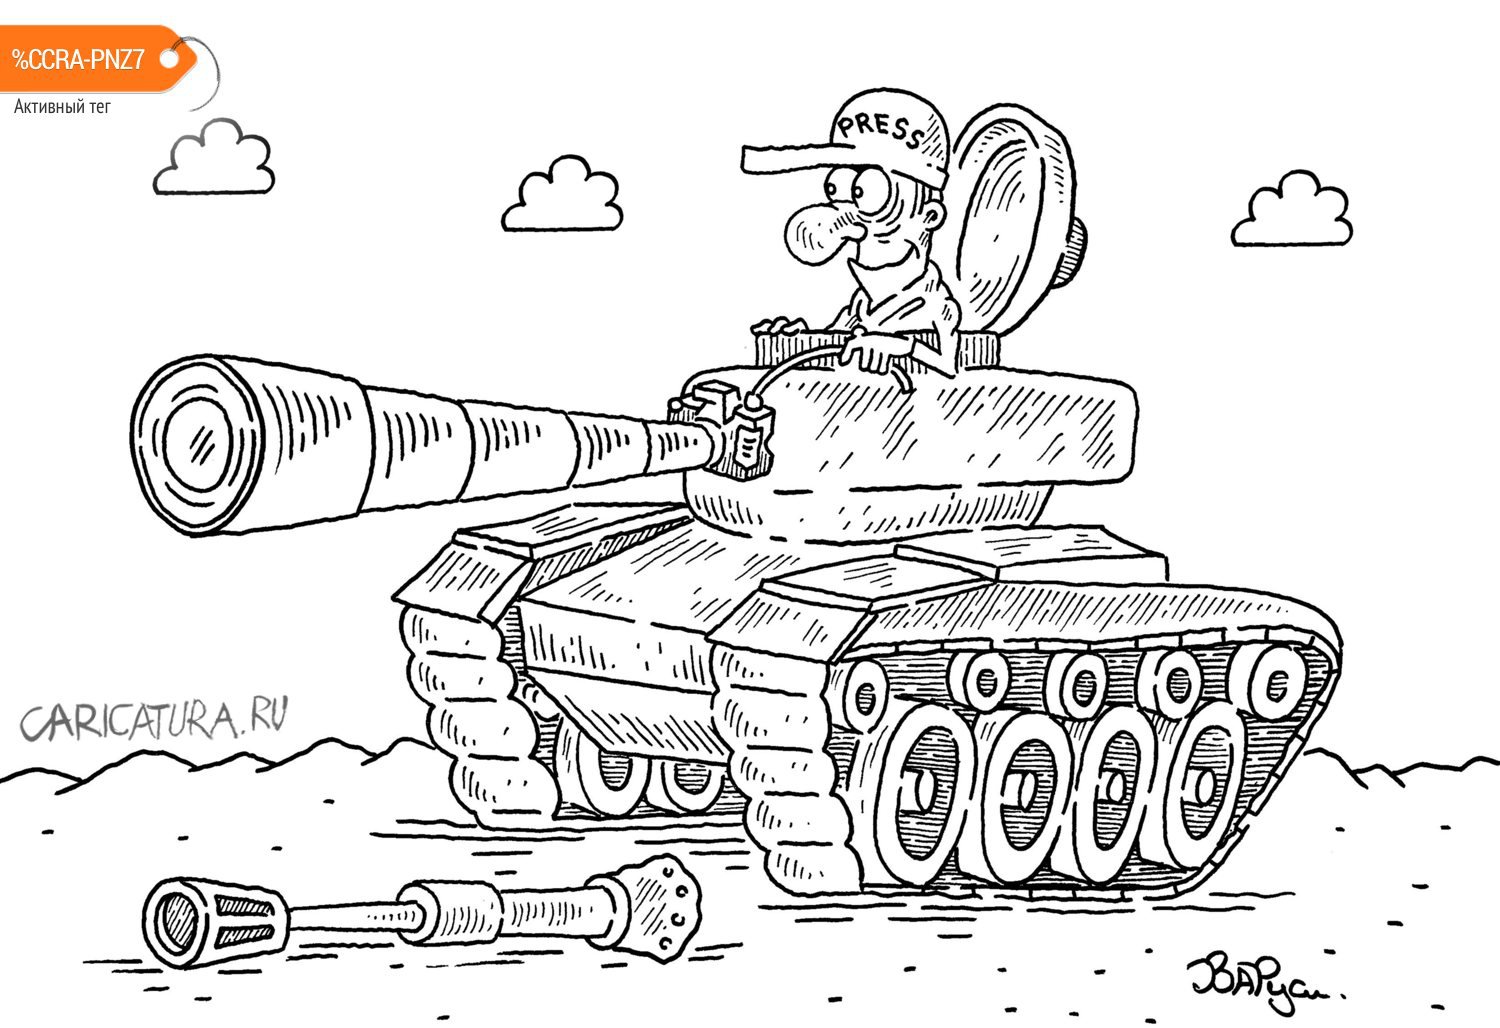 Карикатура "Фотокорреспондент", Руслан Валитов